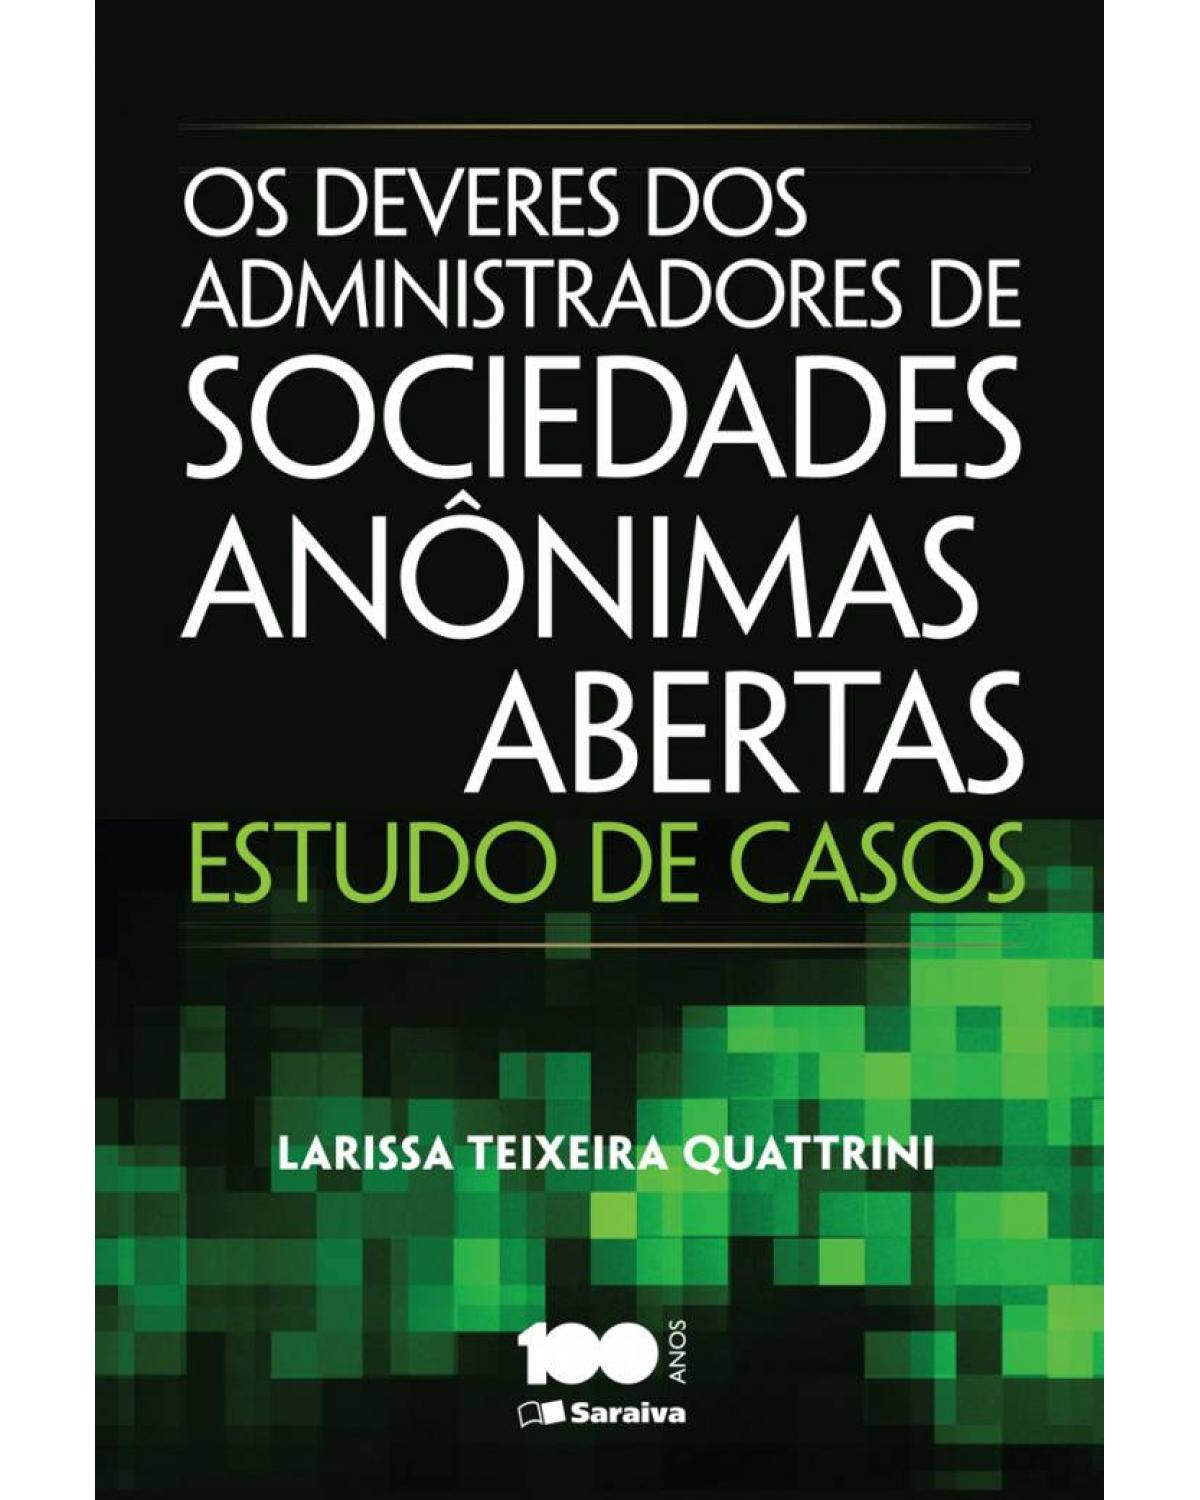 Os deveres dos administradores de sociedades anônimas abertas - estudo de casos - 1ª Edição | 2014